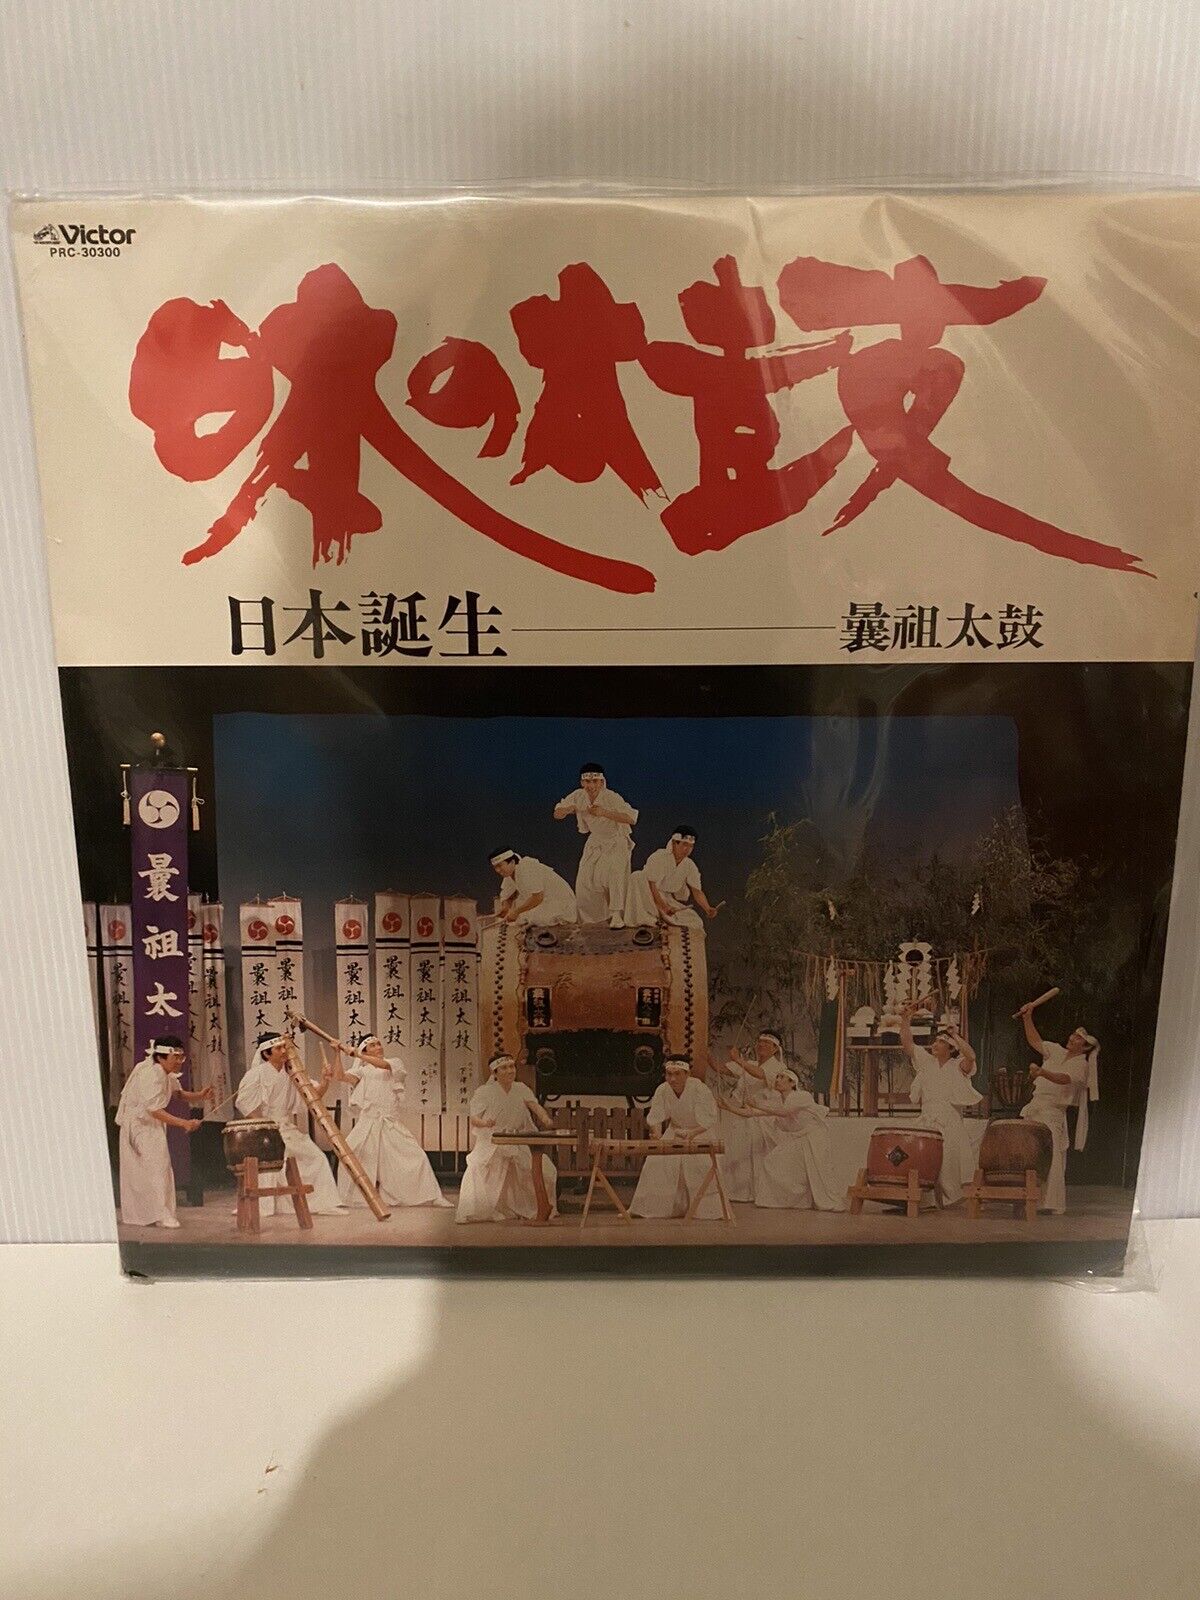 Victor PRC-30300 LP Self produced disc Noso Taiko Japanese drums Kago Aoyagi